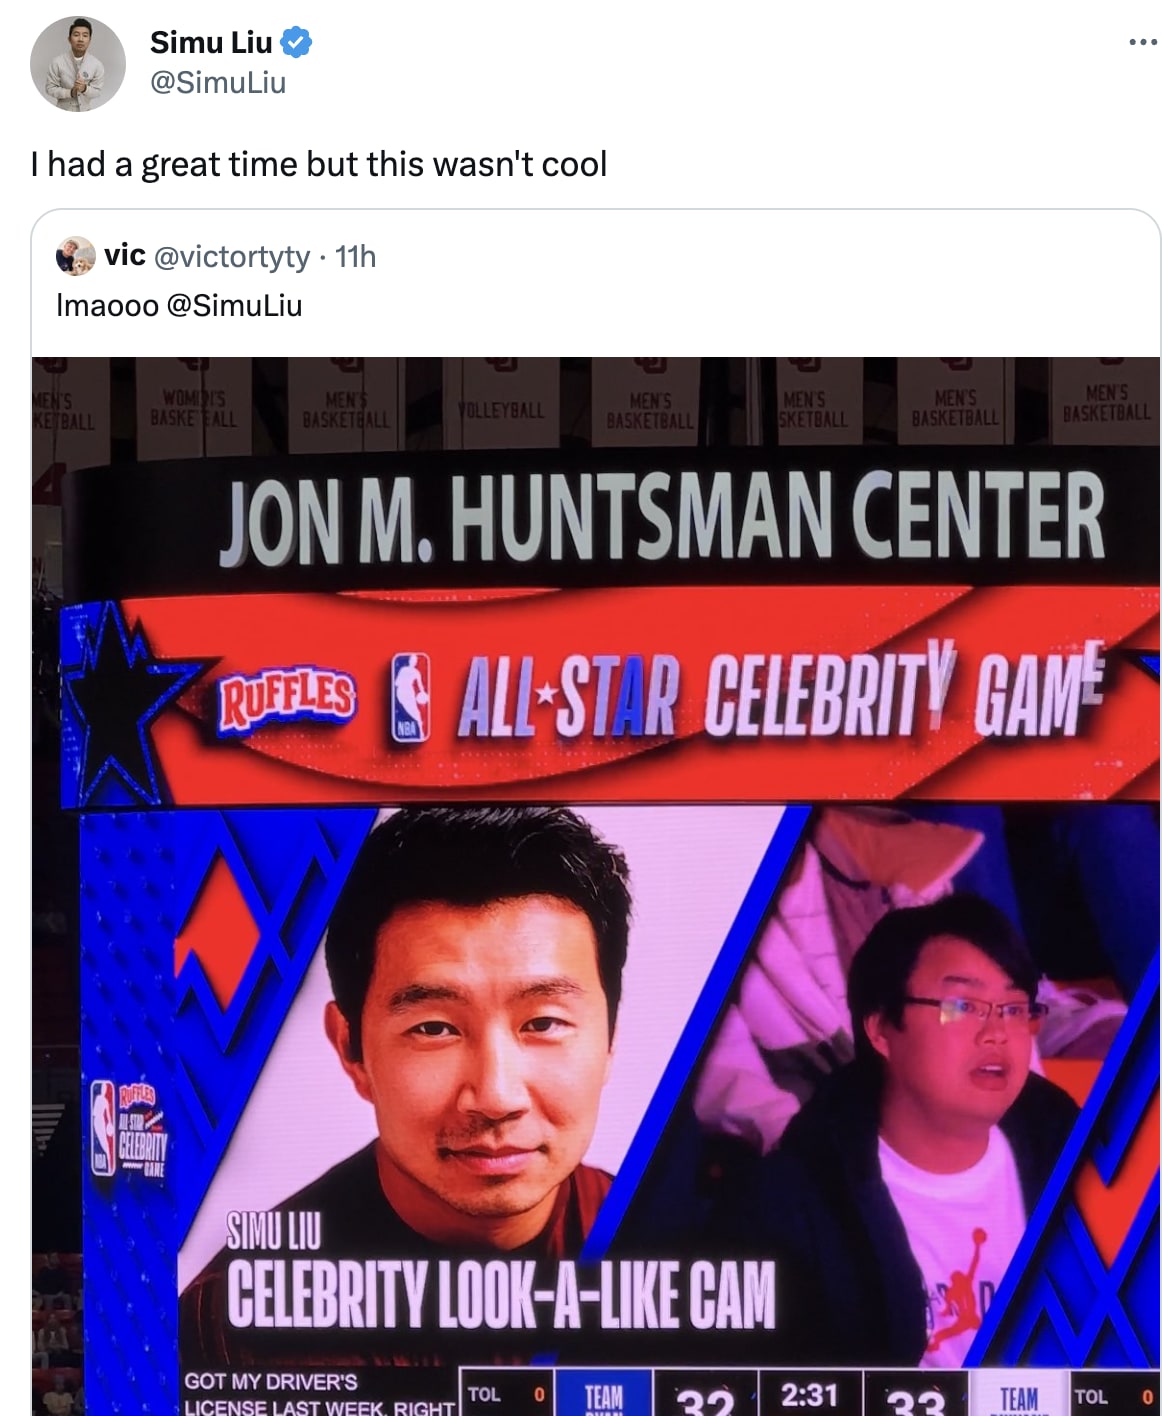 picture of Simu Liu featured in celeb look-a-like-cam segment at celeb all star game in Utah